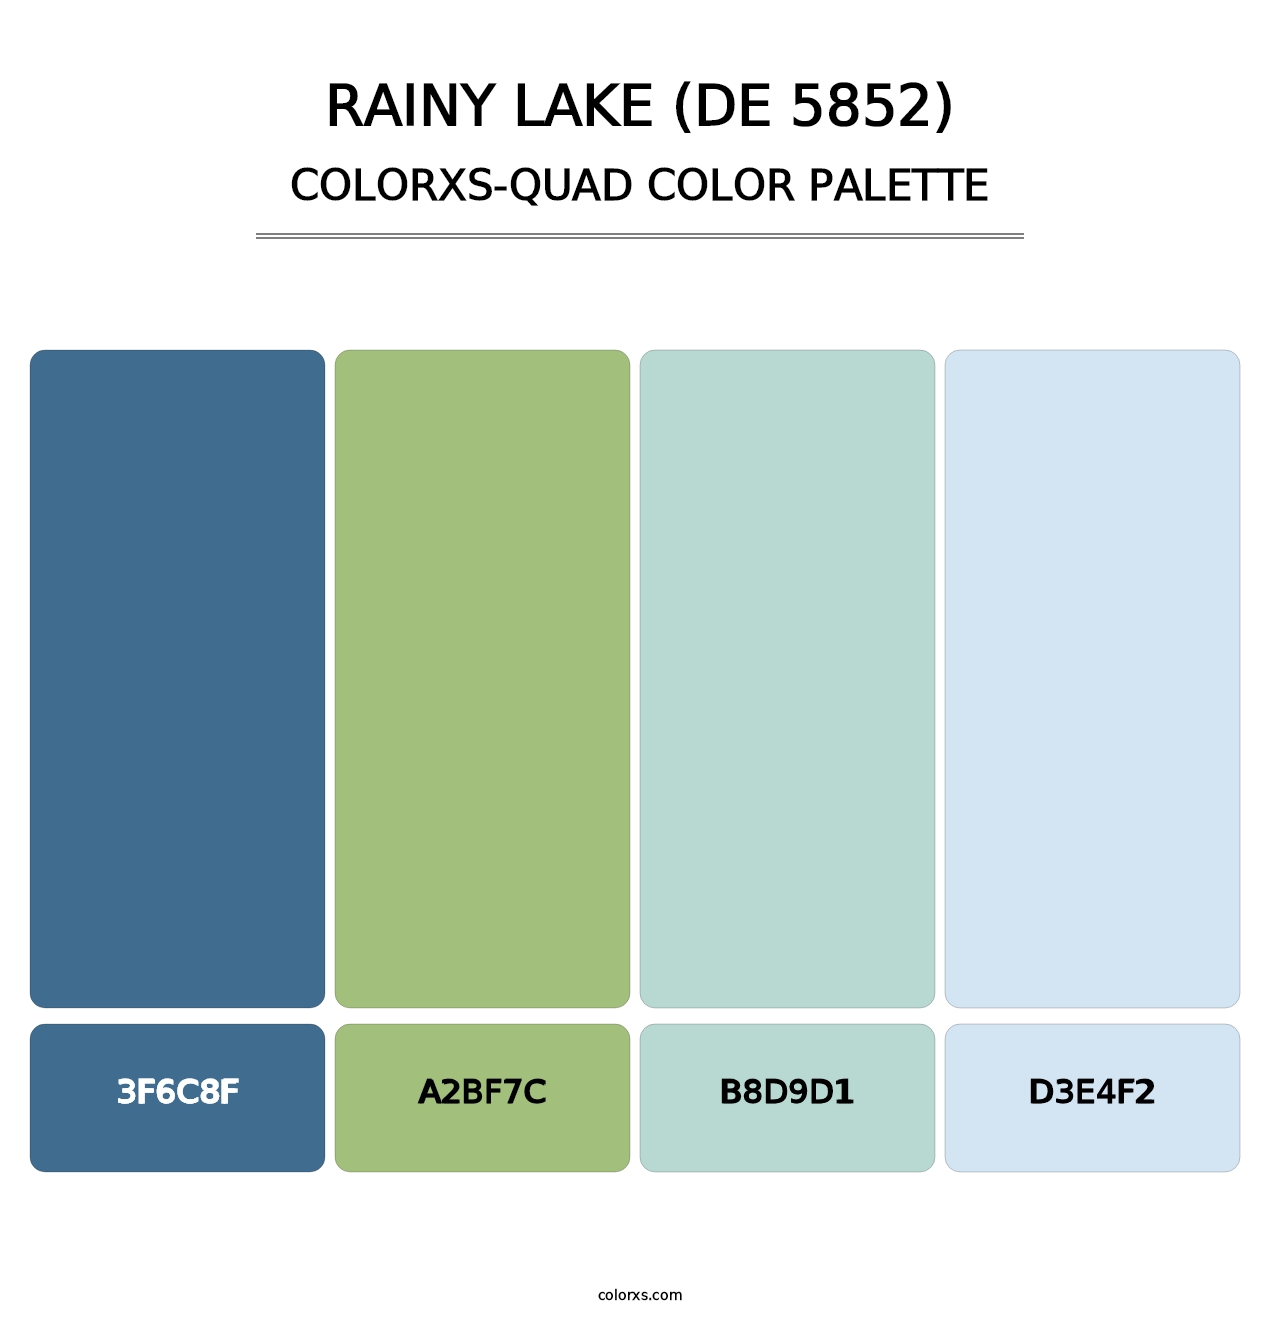 Rainy Lake (DE 5852) - Colorxs Quad Palette